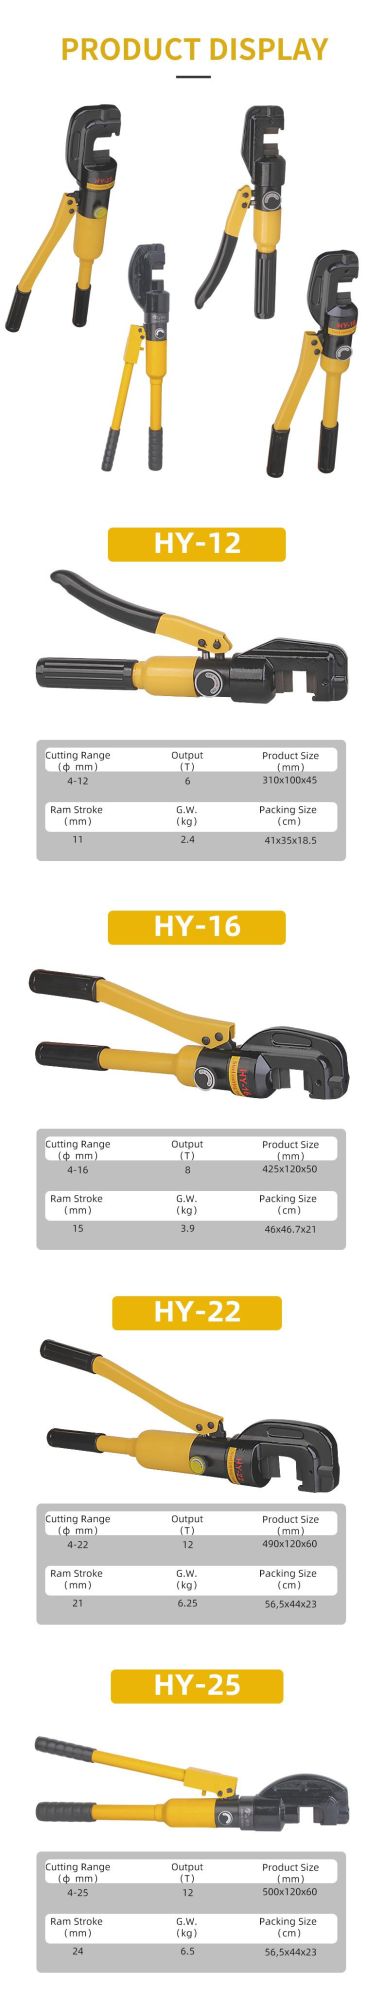 8t 16mm Hydraulic Steel Bar Cutter, Power Tools (HY-16)